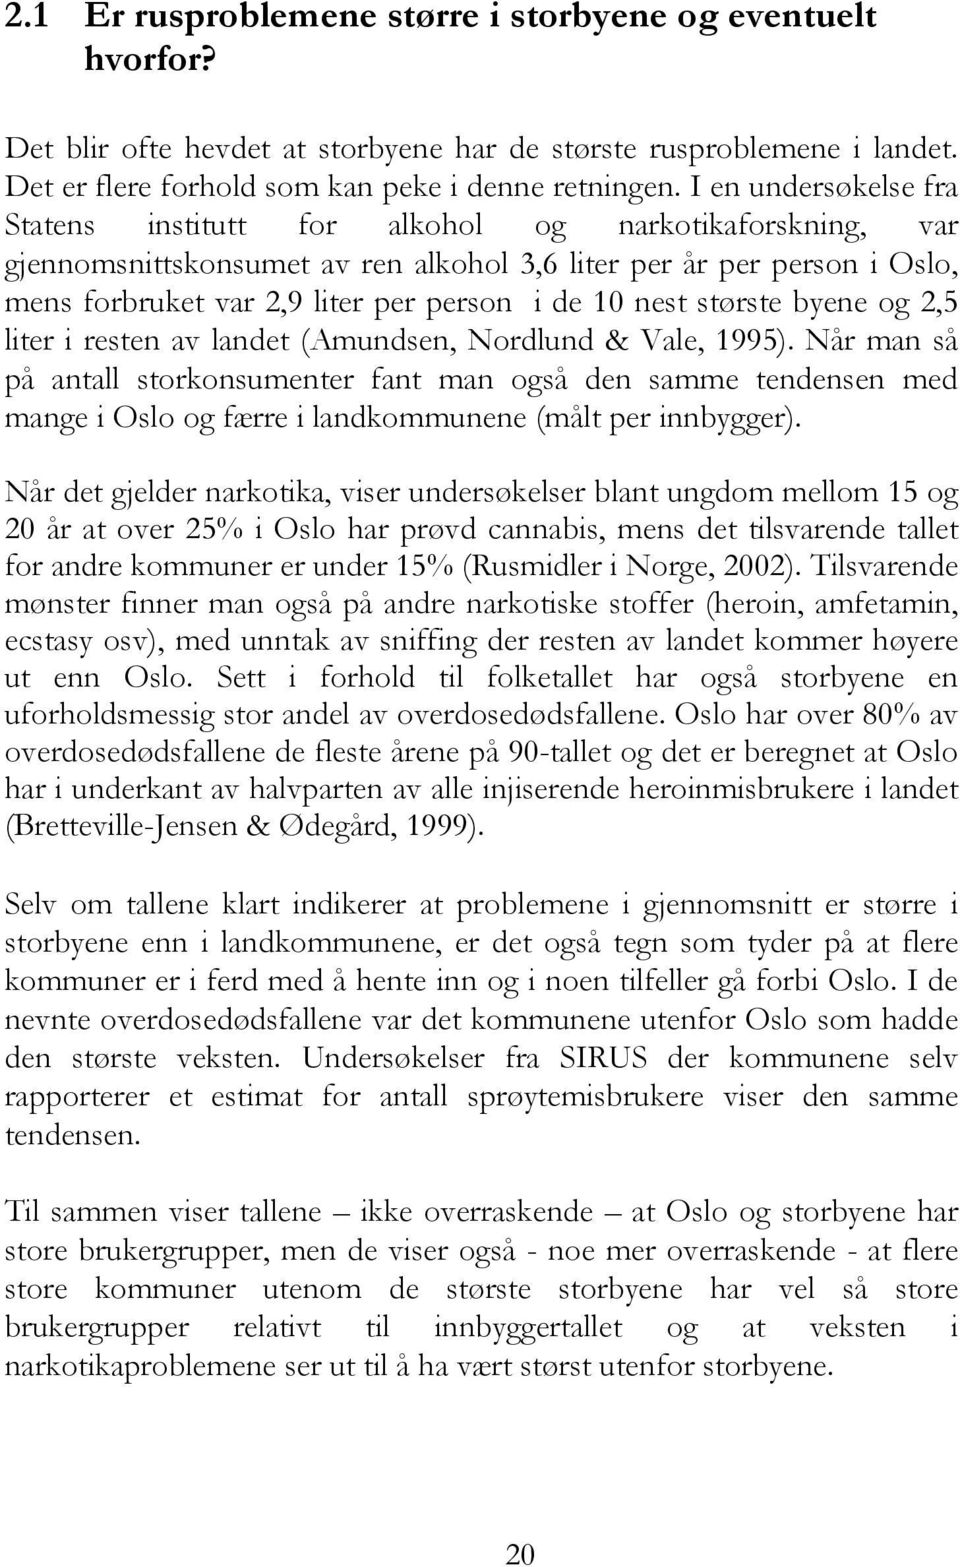 nest største byene og 2,5 liter i resten av landet (Amundsen, Nordlund & Vale, 1995).